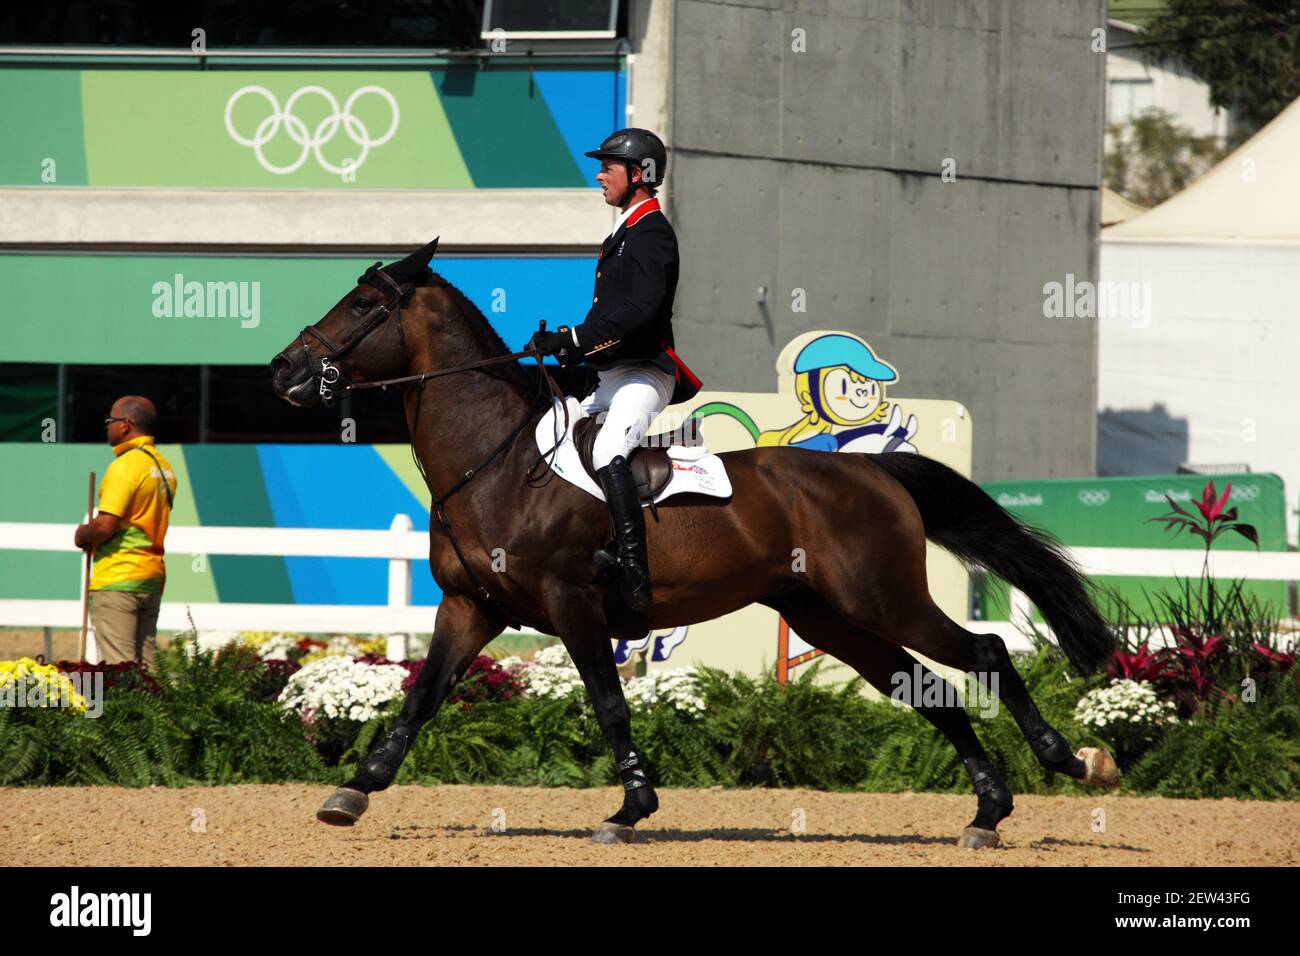 Ben Maher, de Grande-Bretagne, à cheval sur TIC TAC aux Jeux Olympiques de 2016 à Rio de Janeiro, au Brésil Banque D'Images